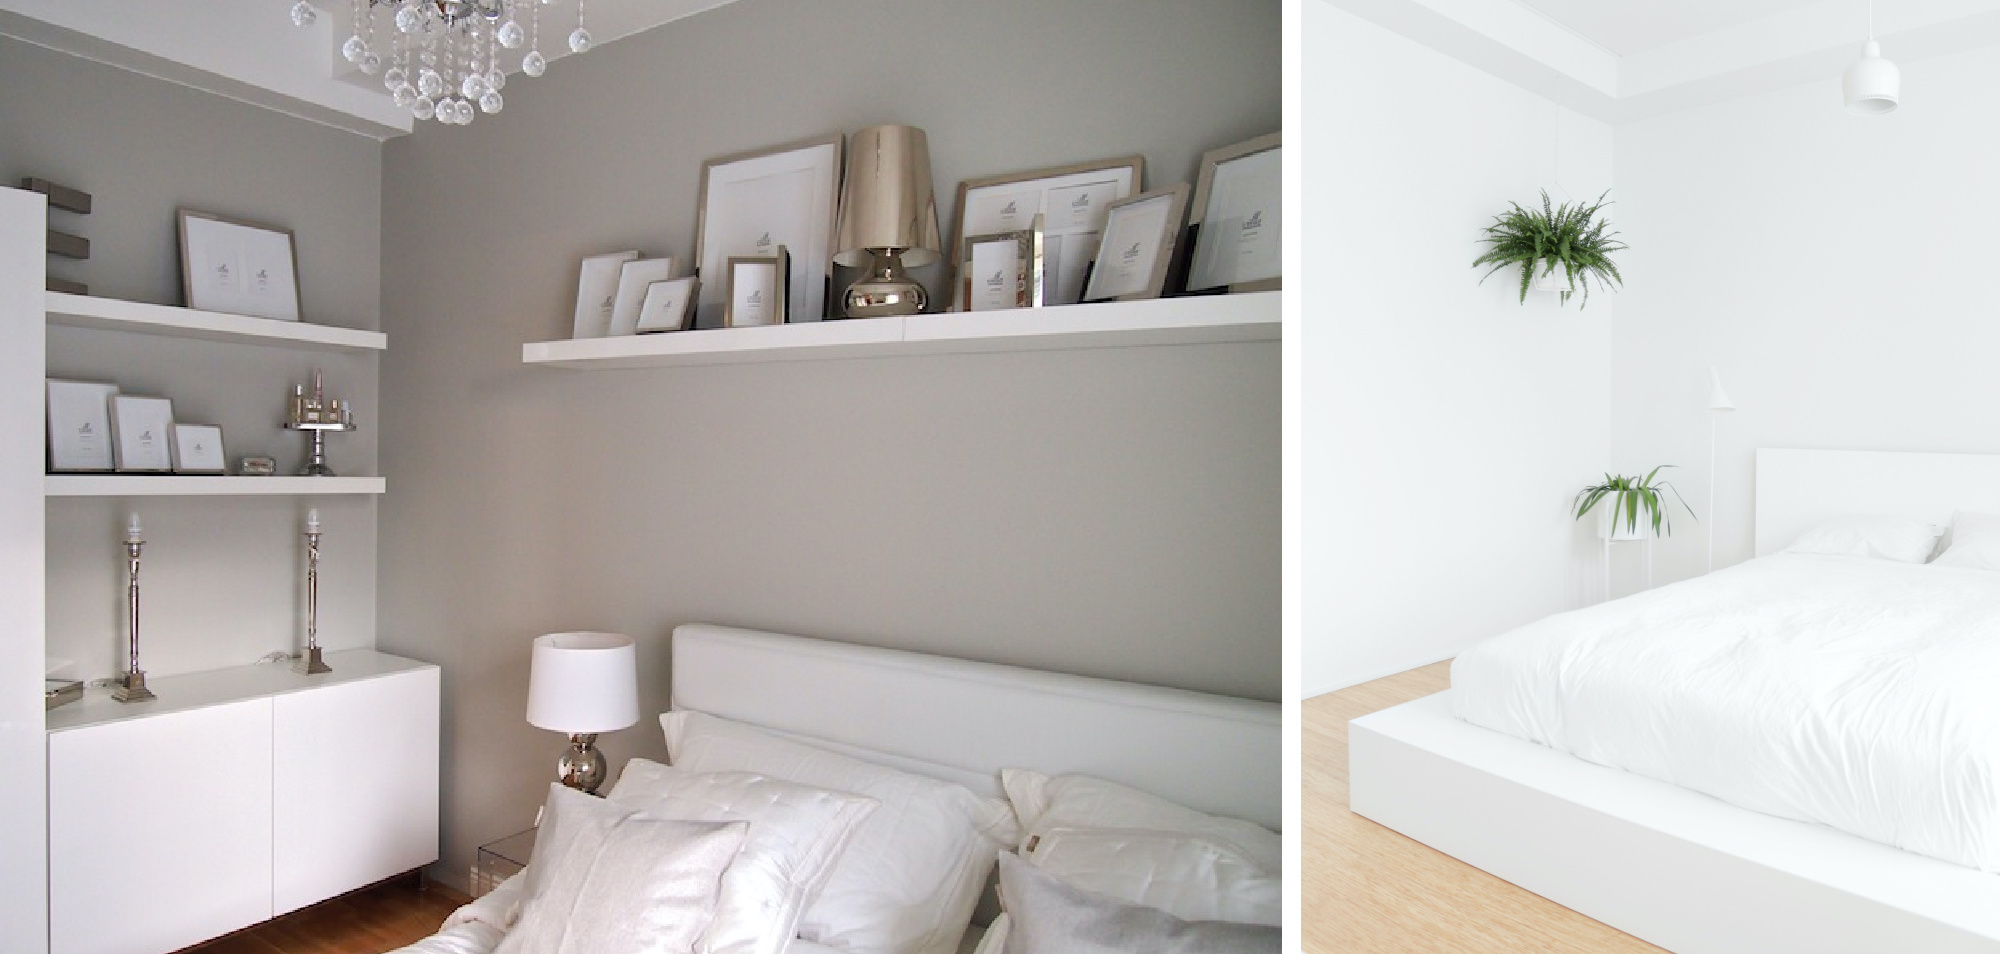 Maalisävy makuuhuoneeseen ennen ja jälkeen kuvia - Sisustusblogi Omakotivalkoinen